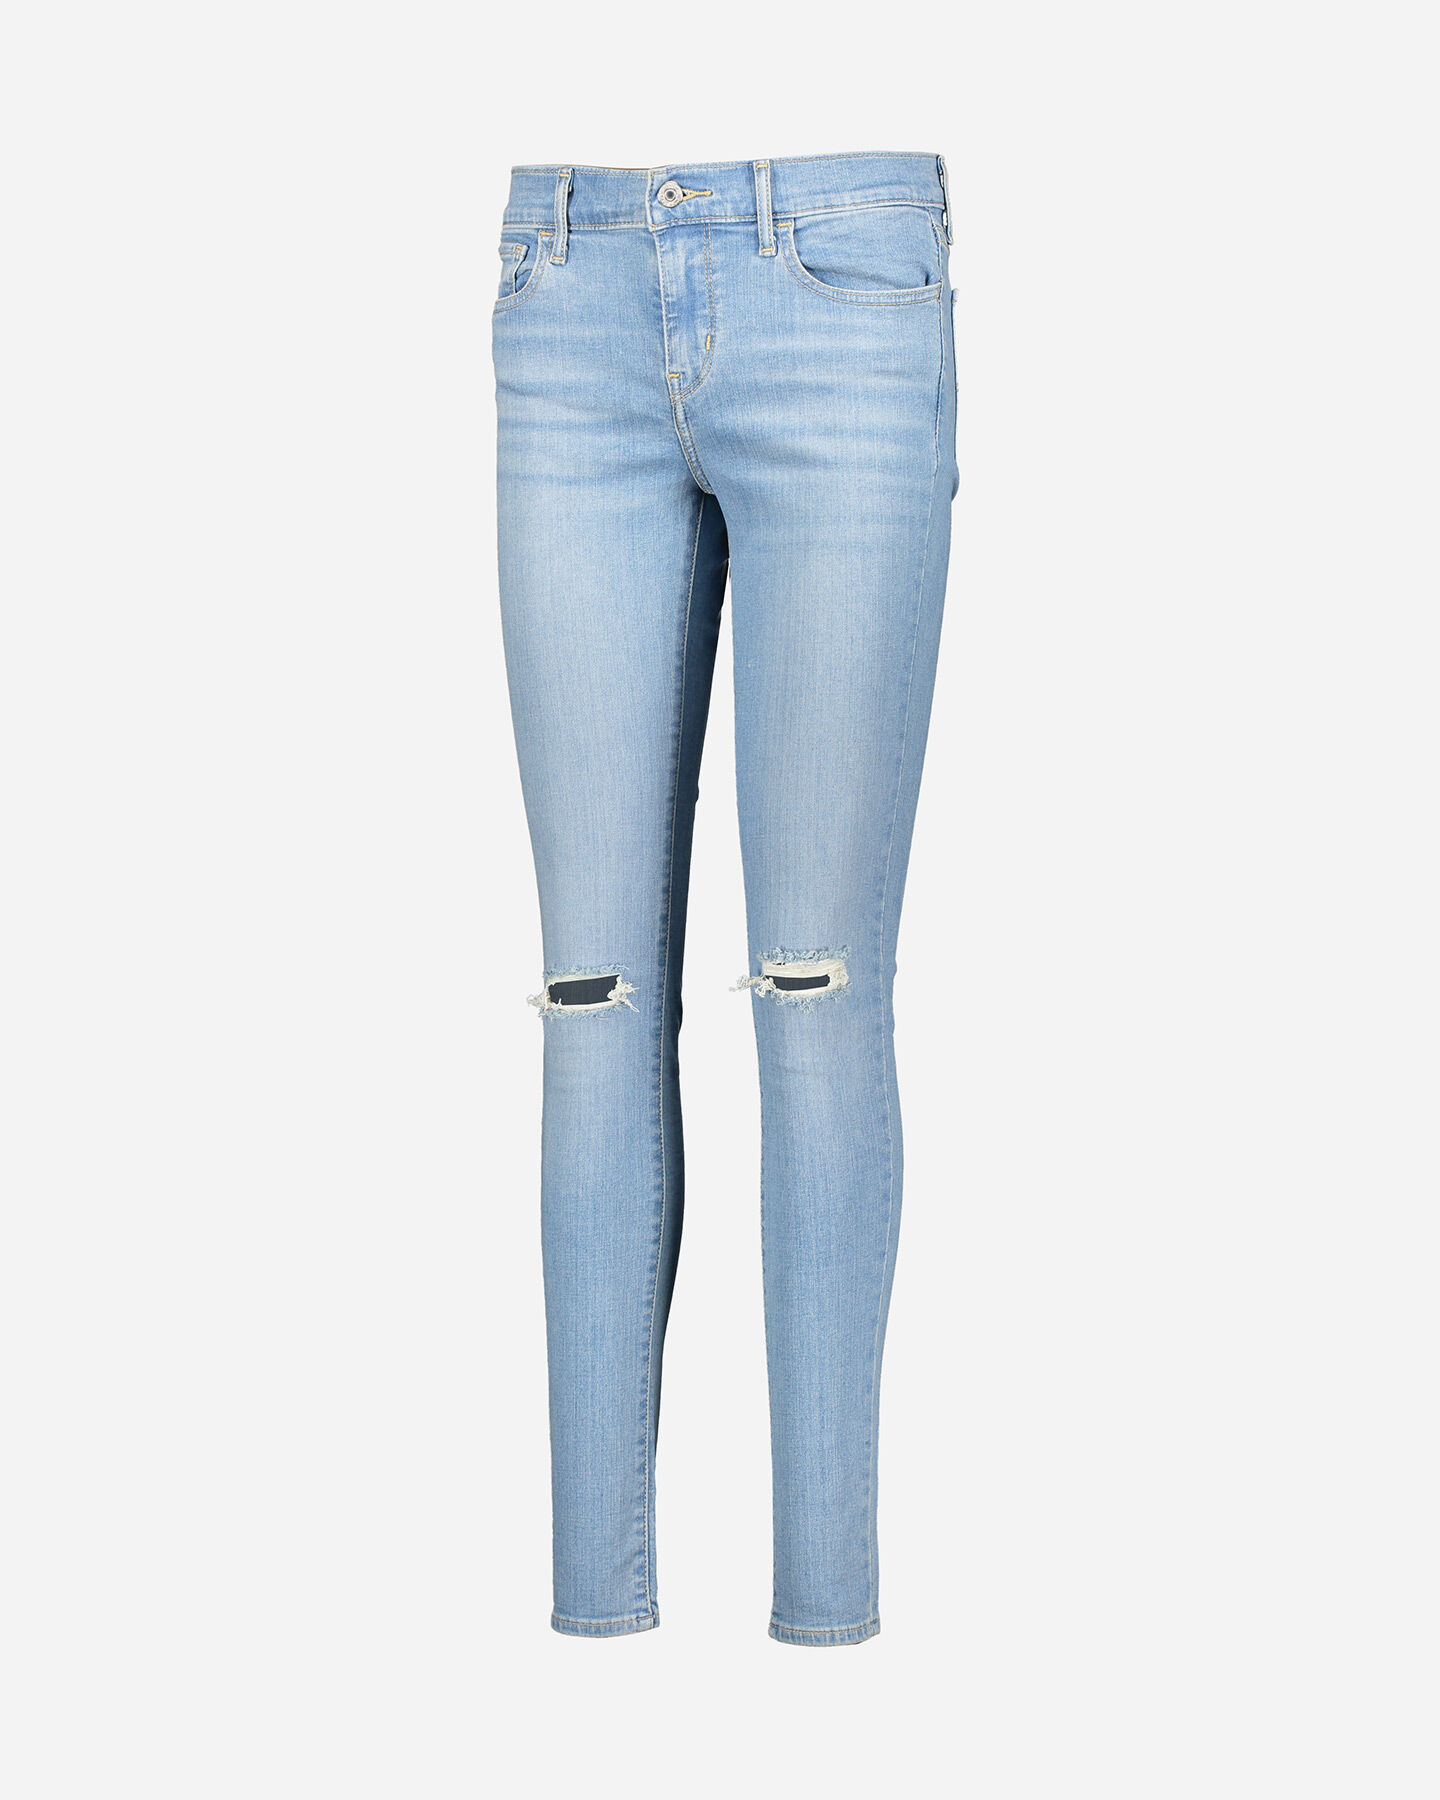  Jeans LEVI'S 710 SUPER SKINNY W S4077780|0364|26 scatto 4